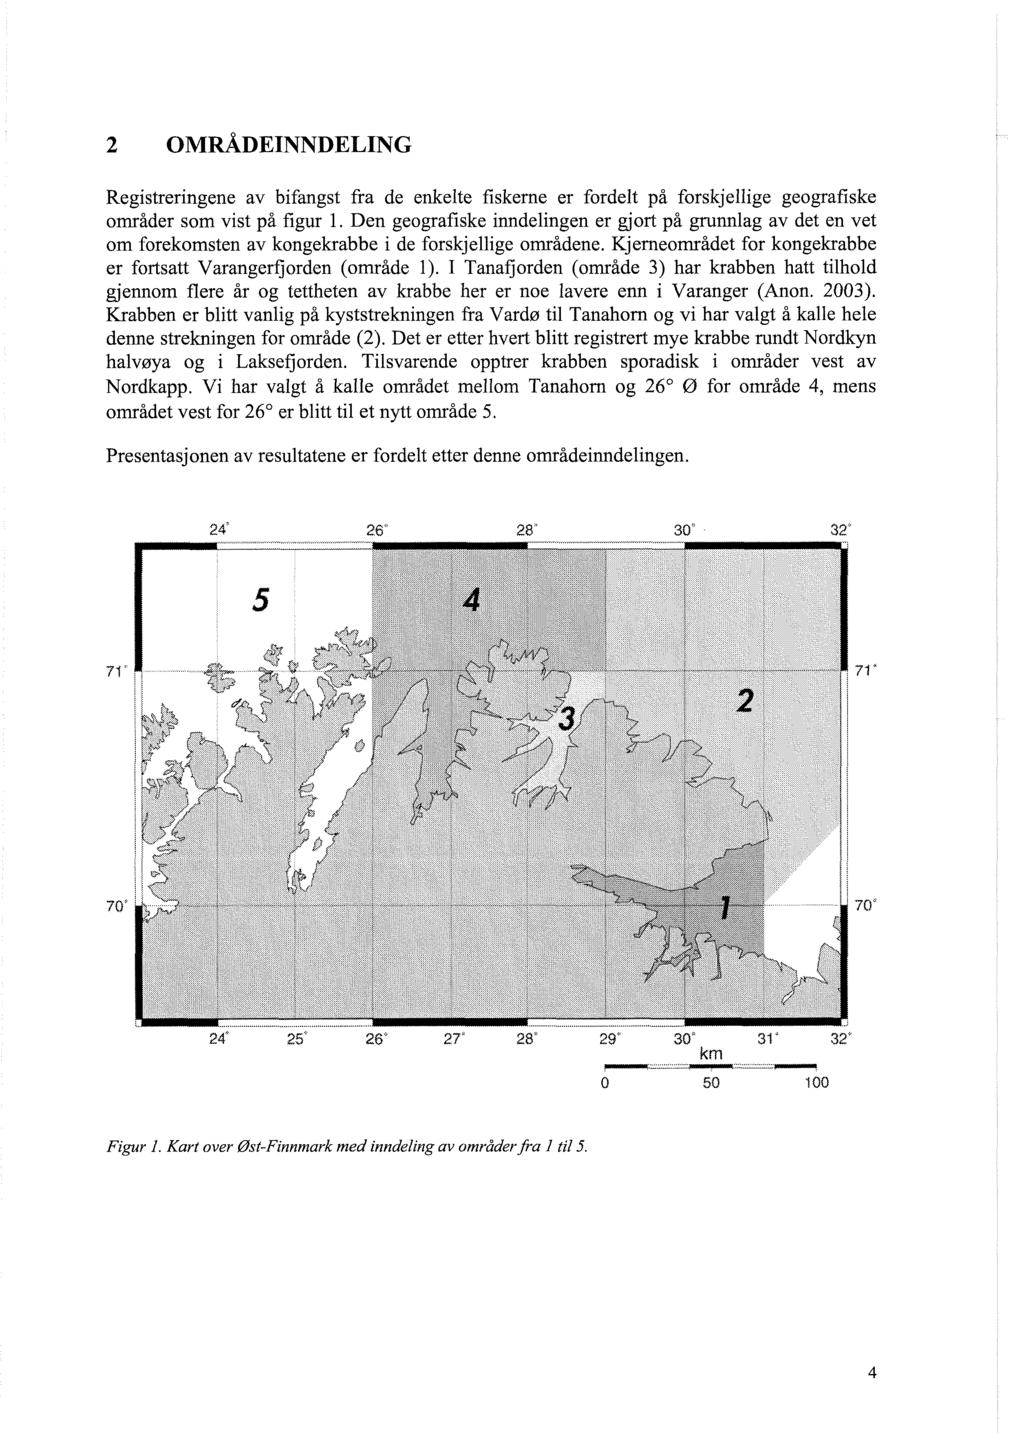 Registreringene av bifangst fra de enkelte fiskerne er fordelt på forskjellige geografiske områder som vist på figur 1.